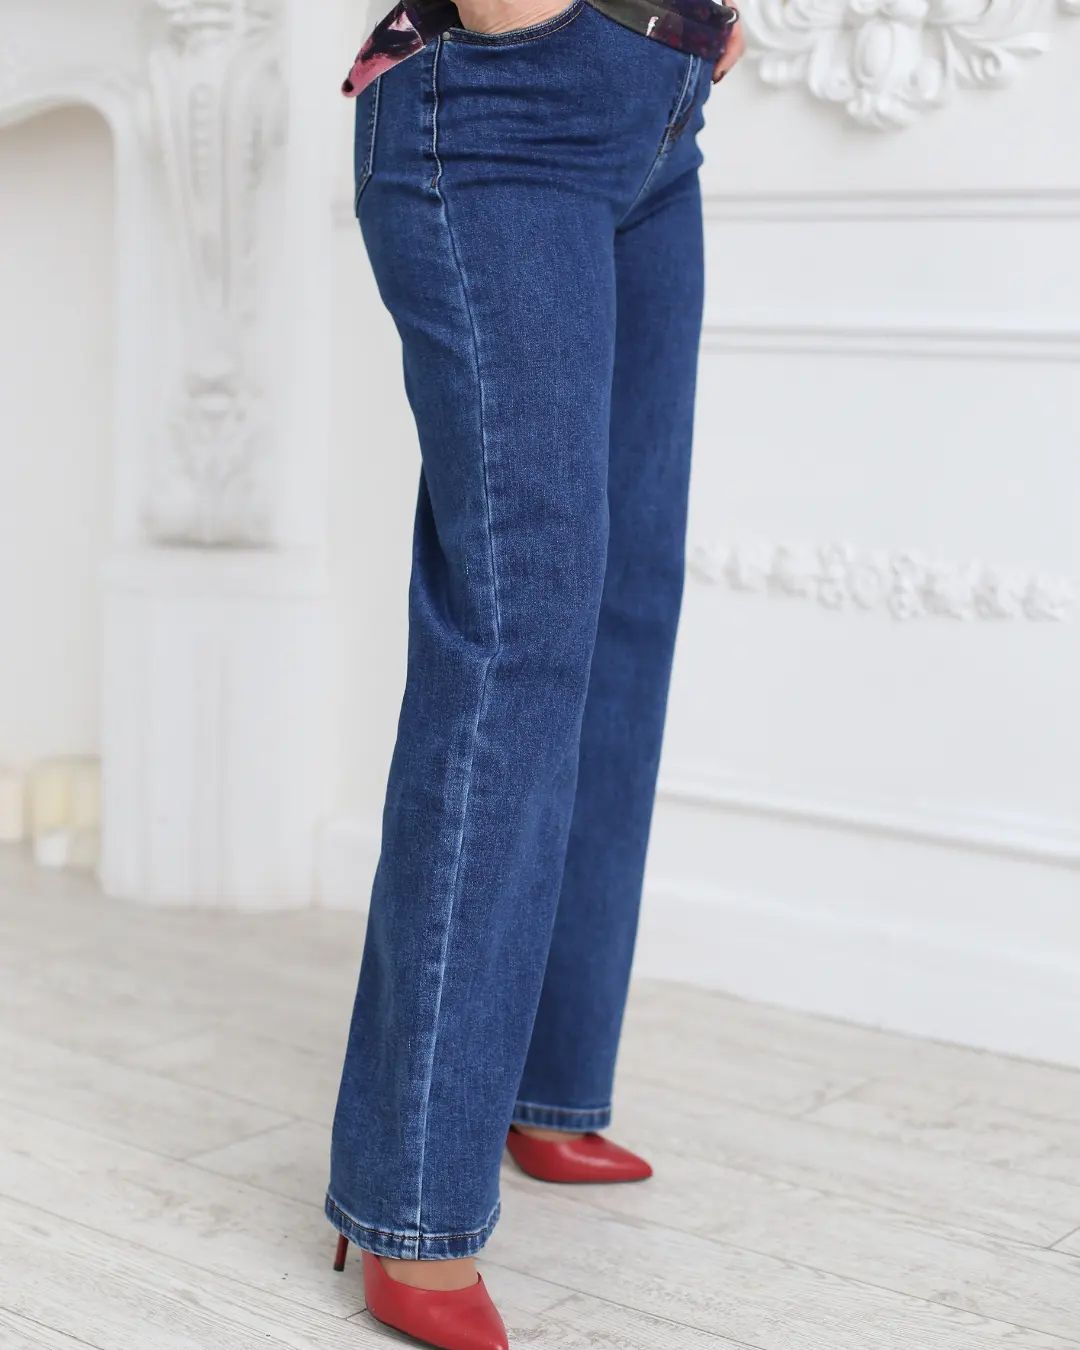  - Лайфхак для определения размера джинсов — как проверить, подойдут ли они, не примеряя их